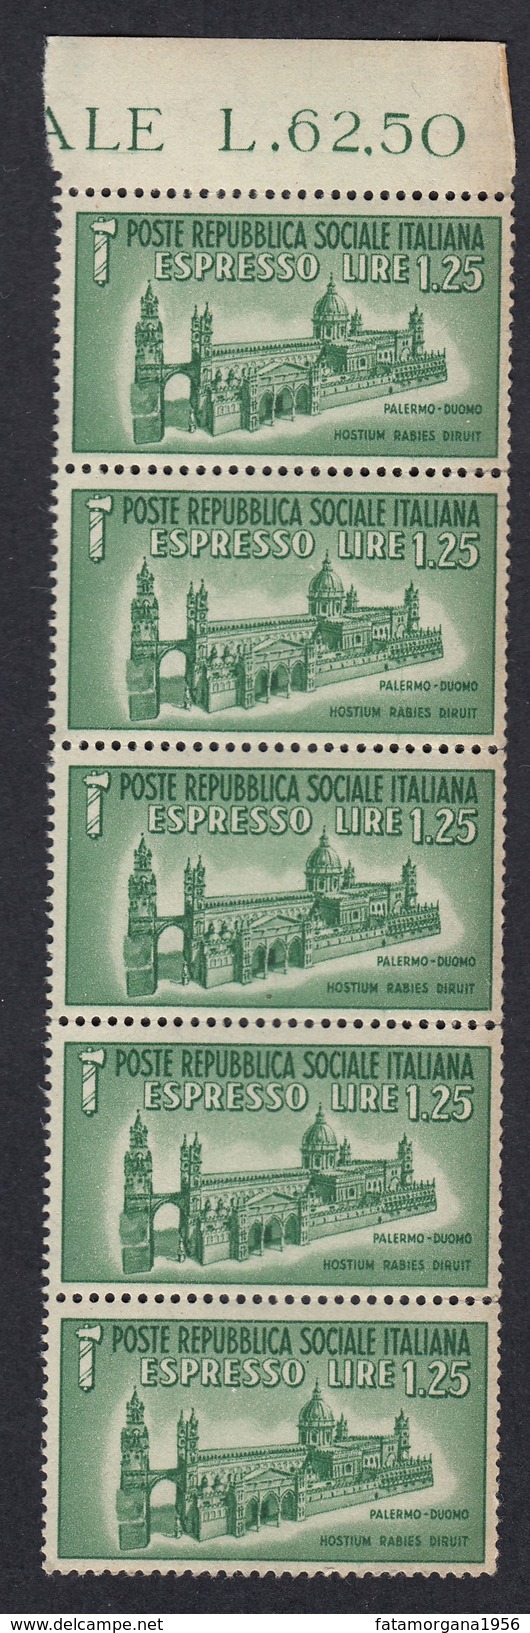 ITALIA - ITALY - Repubblica Sociale - 1944 - Lotto 5 Valori Unificato E23, Nuovi MNH, Uniti Fra Loro. - Express Mail